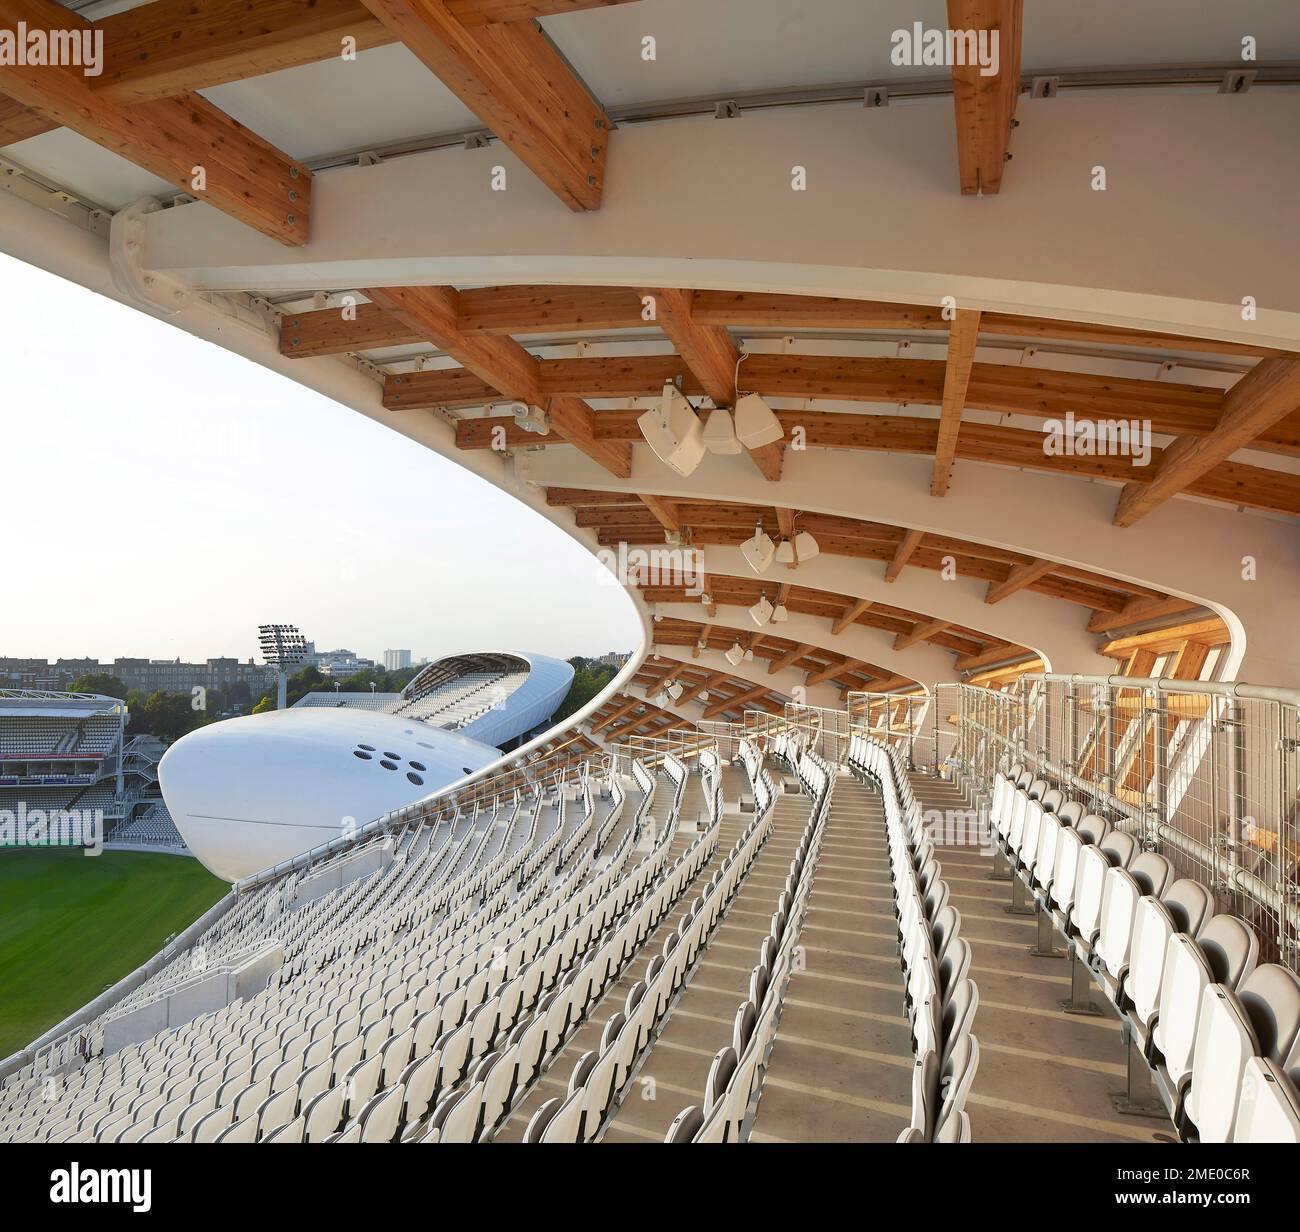 Sitzplätze unter dem Holzbalken. Lord's Cricket Ground, London, Großbritannien. Architekt: Wilkinson Eyre Architects, 2021. Stockfoto